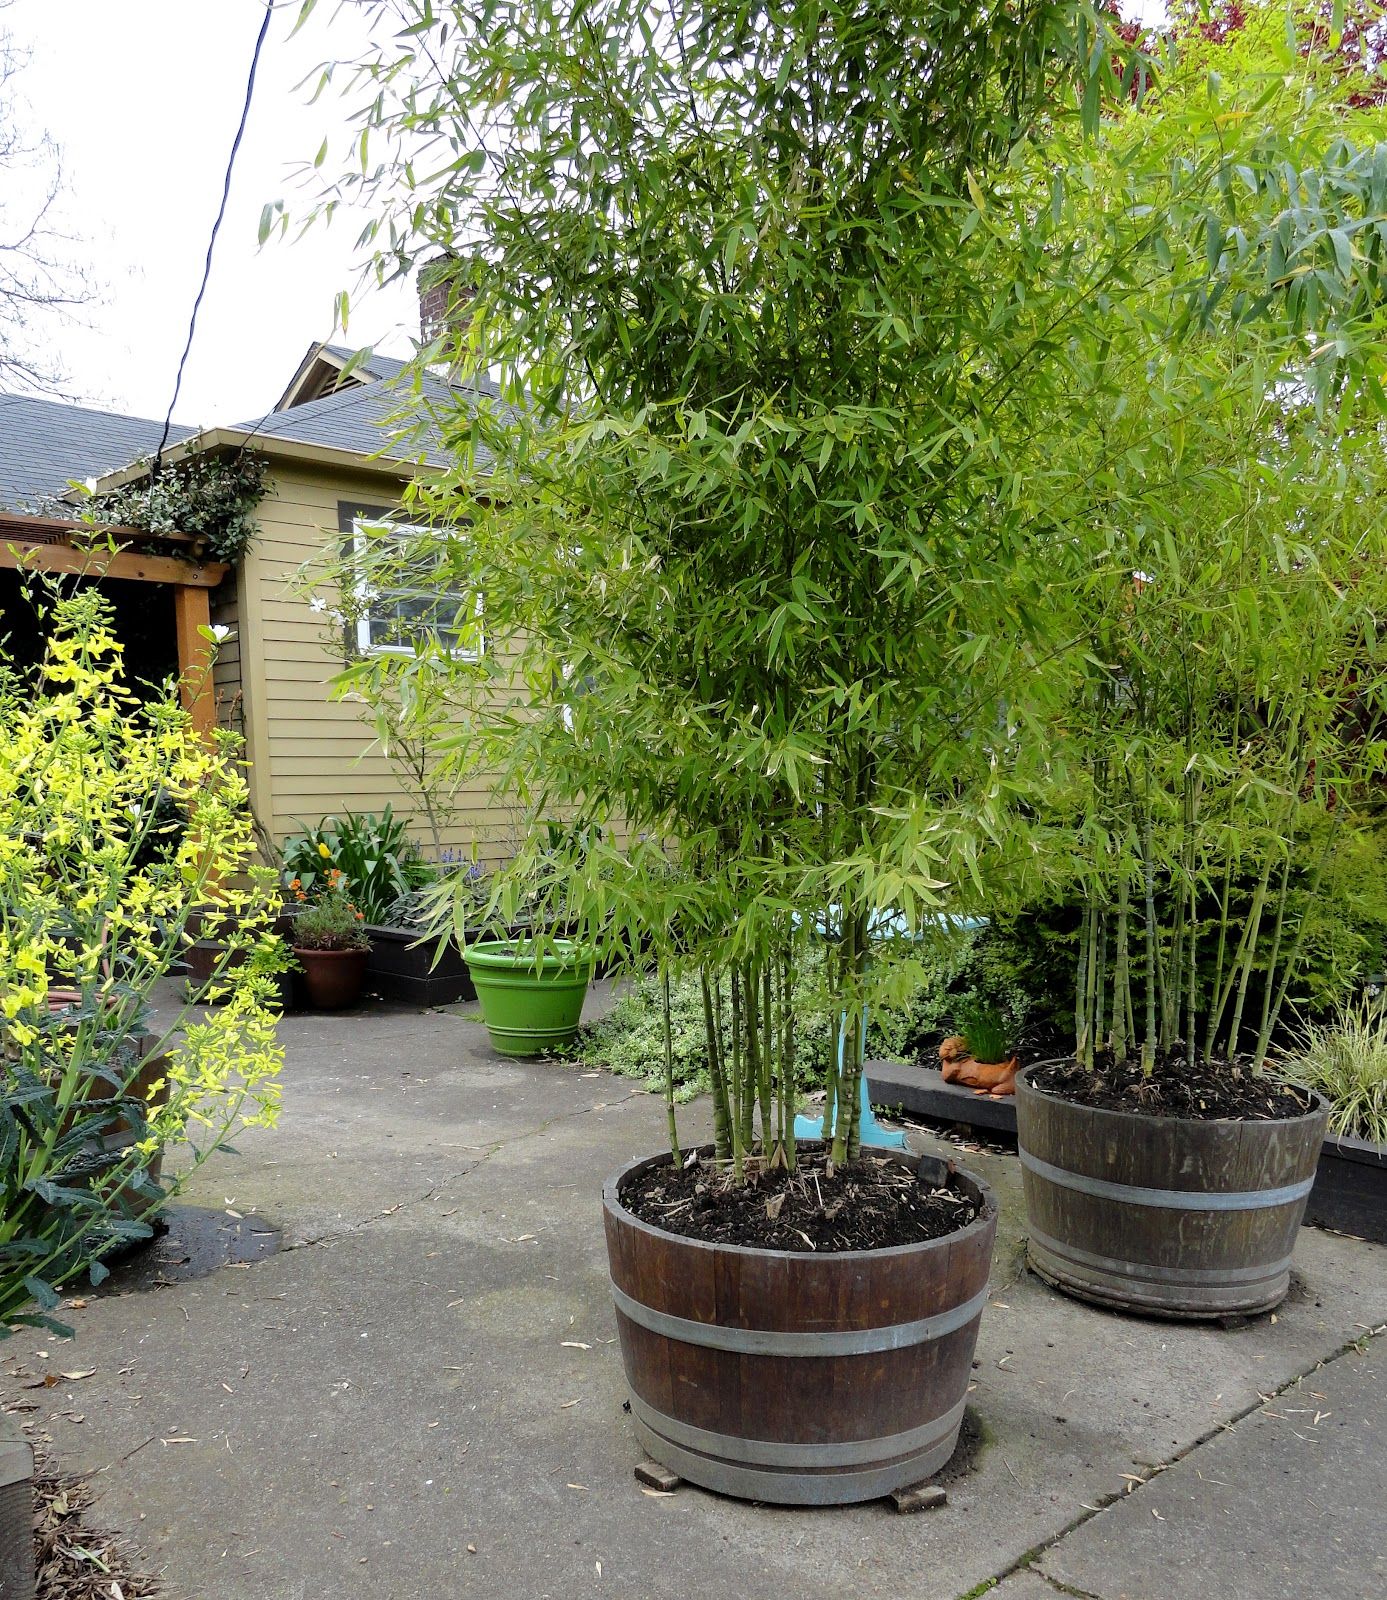 Meuble De Terrasse Luxe Planter Des Bambous Dans Des tonneaux Ils Poussent Vite Et